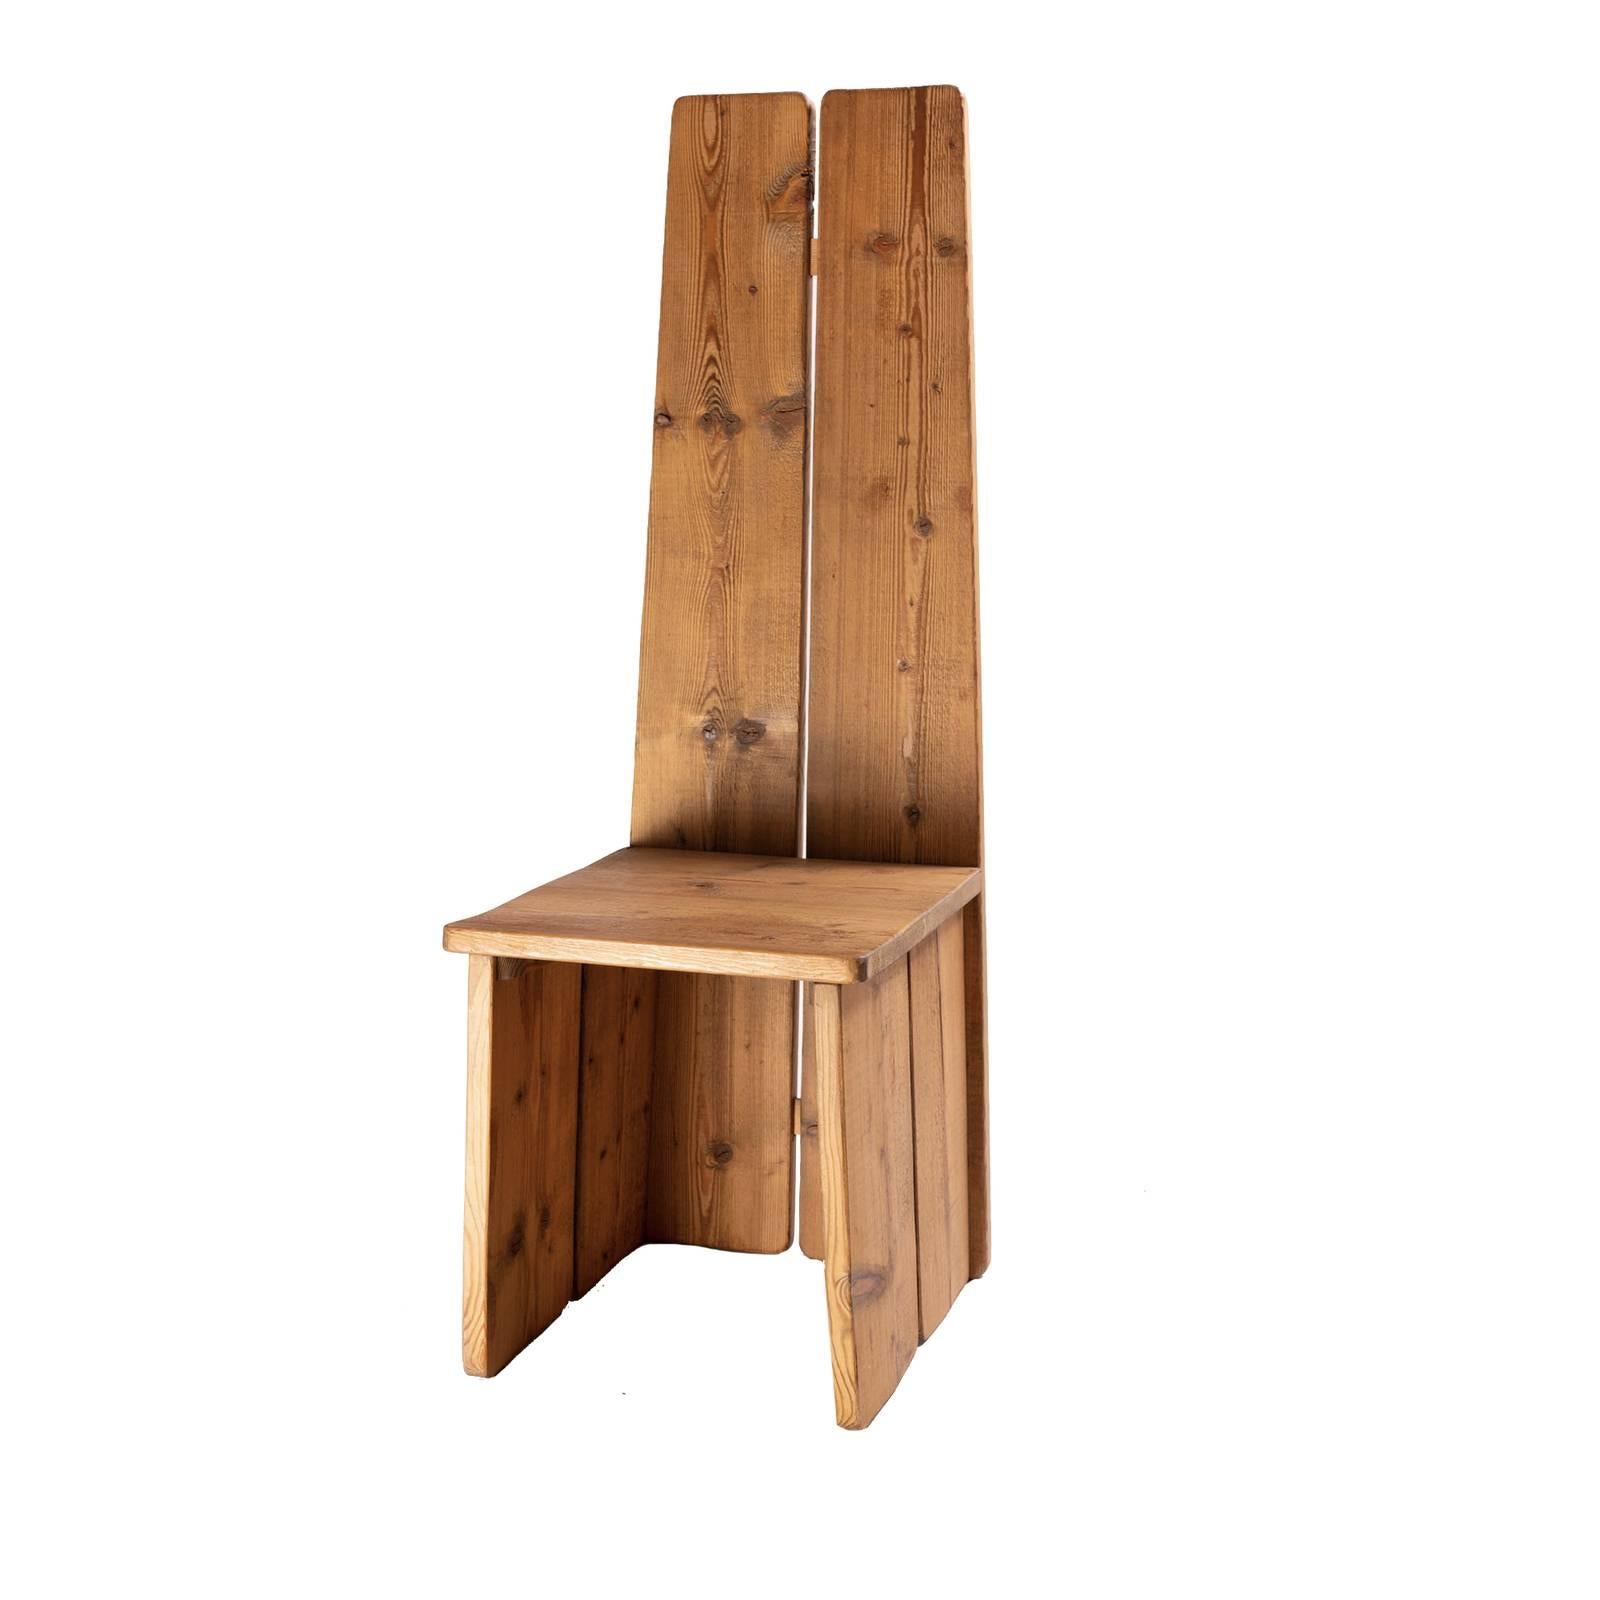 Dieser Stuhl, der ein rustikales oder modernes Interieur bereichert, wurde vollständig aus massivem Lärchenholz gefertigt und verfügt über eine sehr bequeme Sitzfläche, die durch eine hohe Rückenlehne betont wird. Der elegante Minimalismus seiner